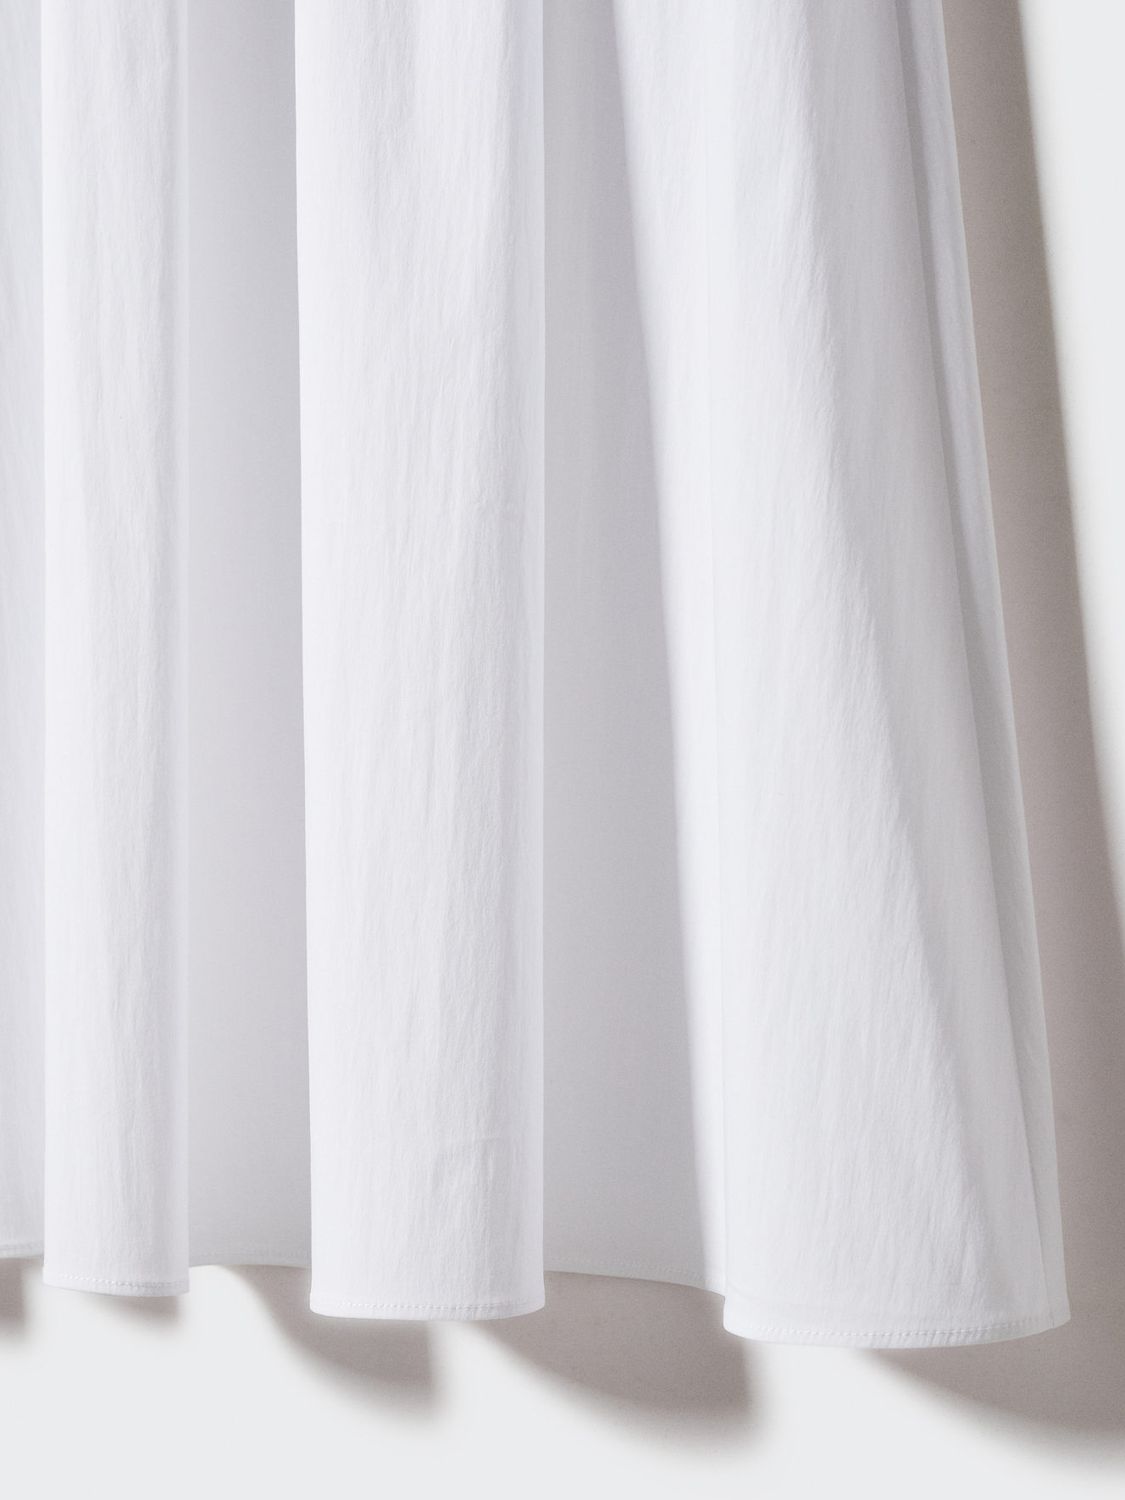 Mango Creta Organic Cotton A Line Midi Skirt, White, XXS